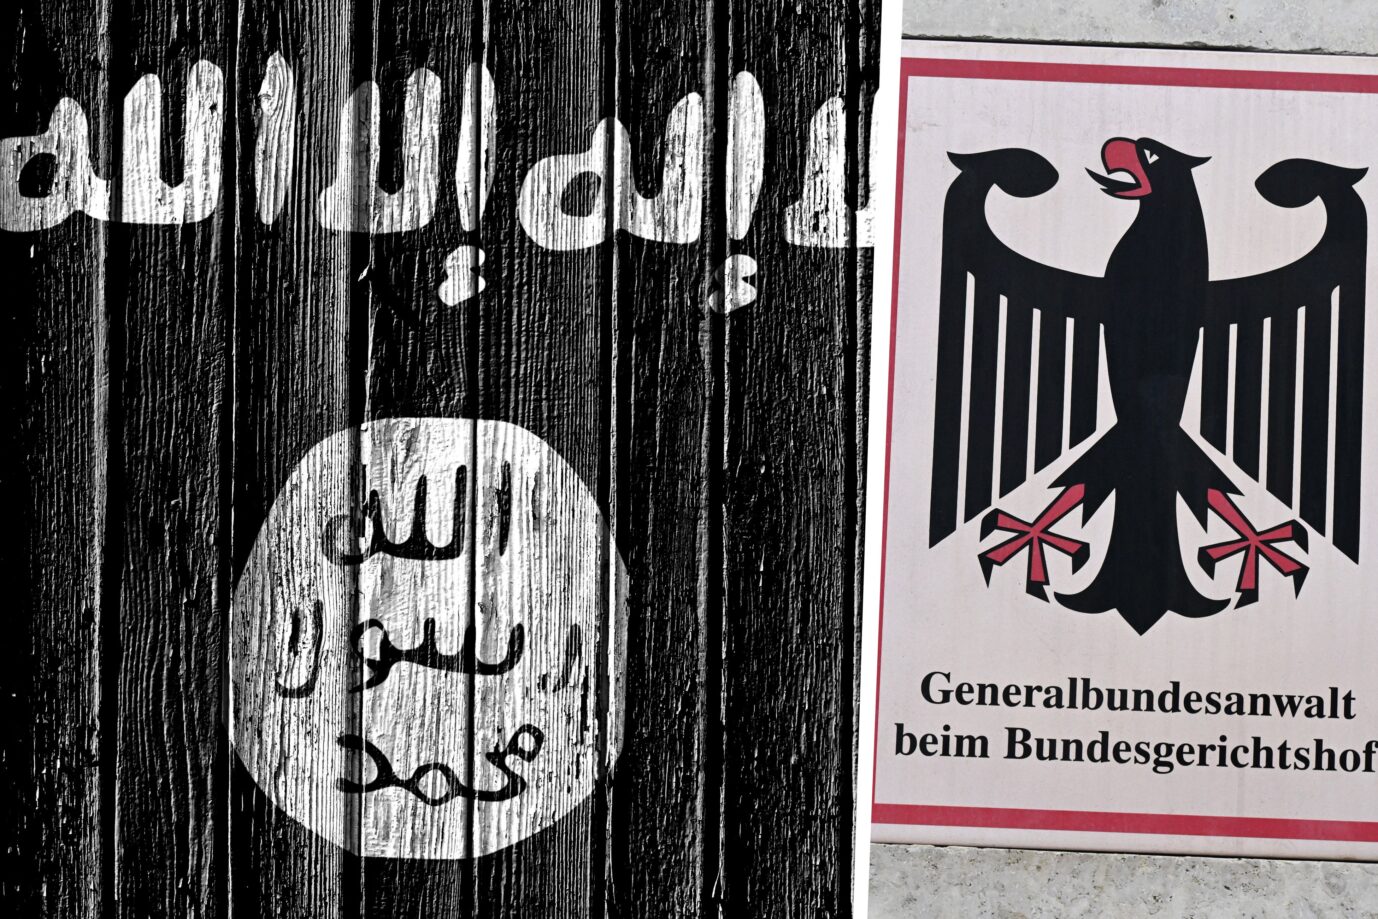 Auf dem Bild sieht man das Logo des Islamischen Staats (IS) und das Logo des Generalbundesanwalts. Der Generalbundesanwalt läßt ein Ehepaar aus dem Irak in Bayern verhaften, das für den IS aktiv gewesen sein soll. Die Vorwürfe gegen die Iraker zeugen von finstersten menschlichen Abgründen.